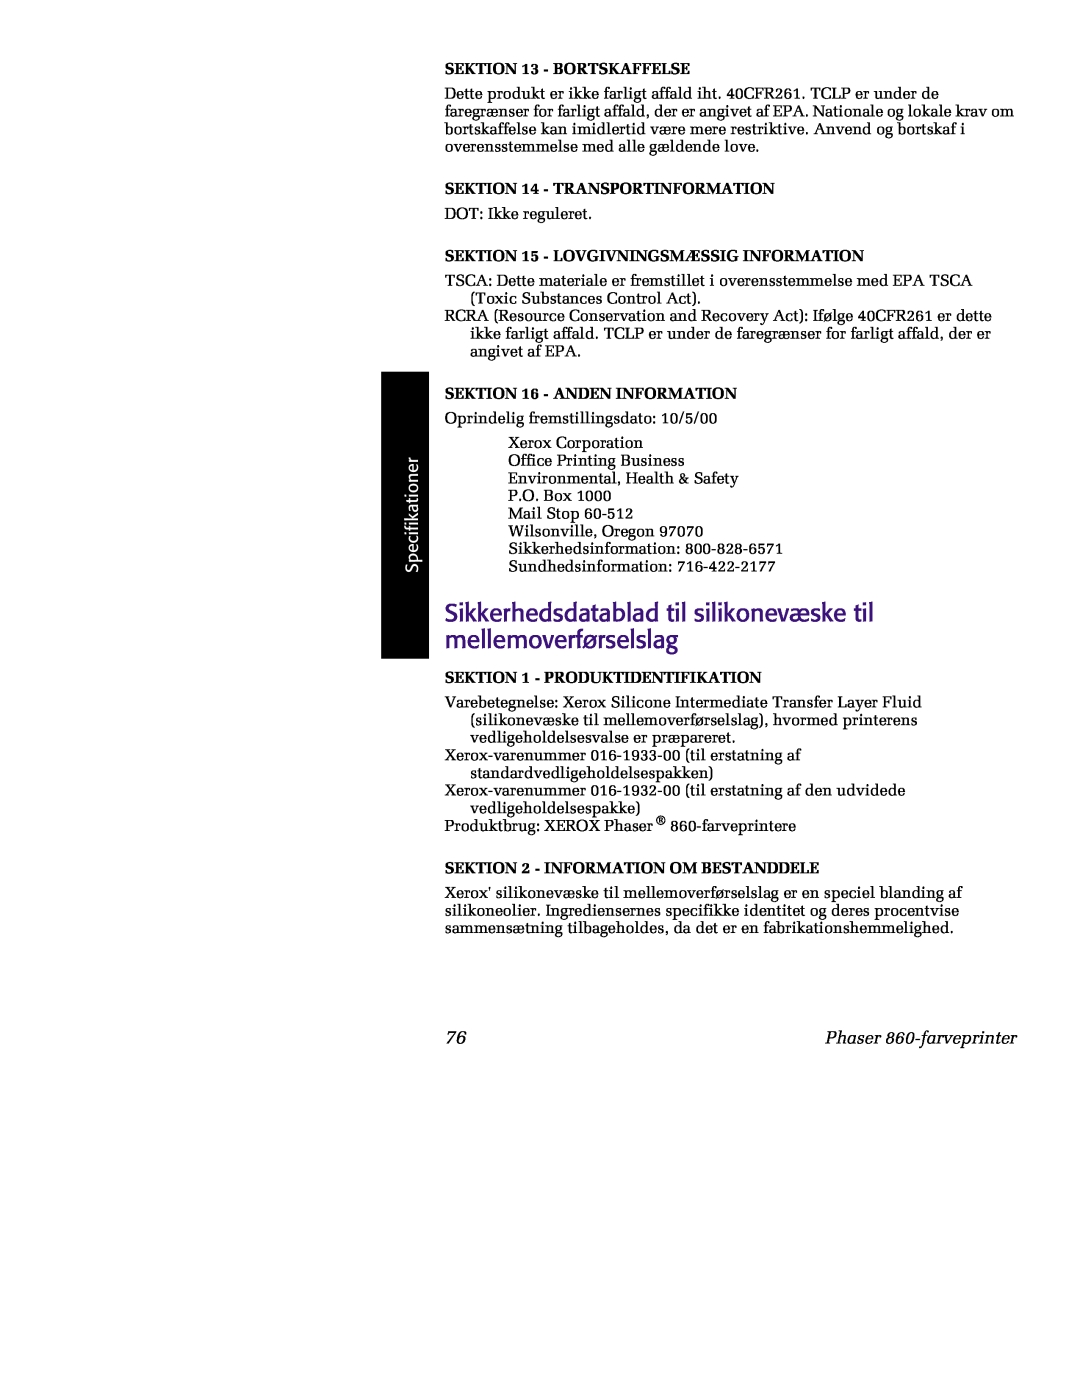 Tektronix manual Sikkerhedsdatablad til silikonevæske til mellemoverførselslag, Specifikationer, Phaser 860-farveprinter 